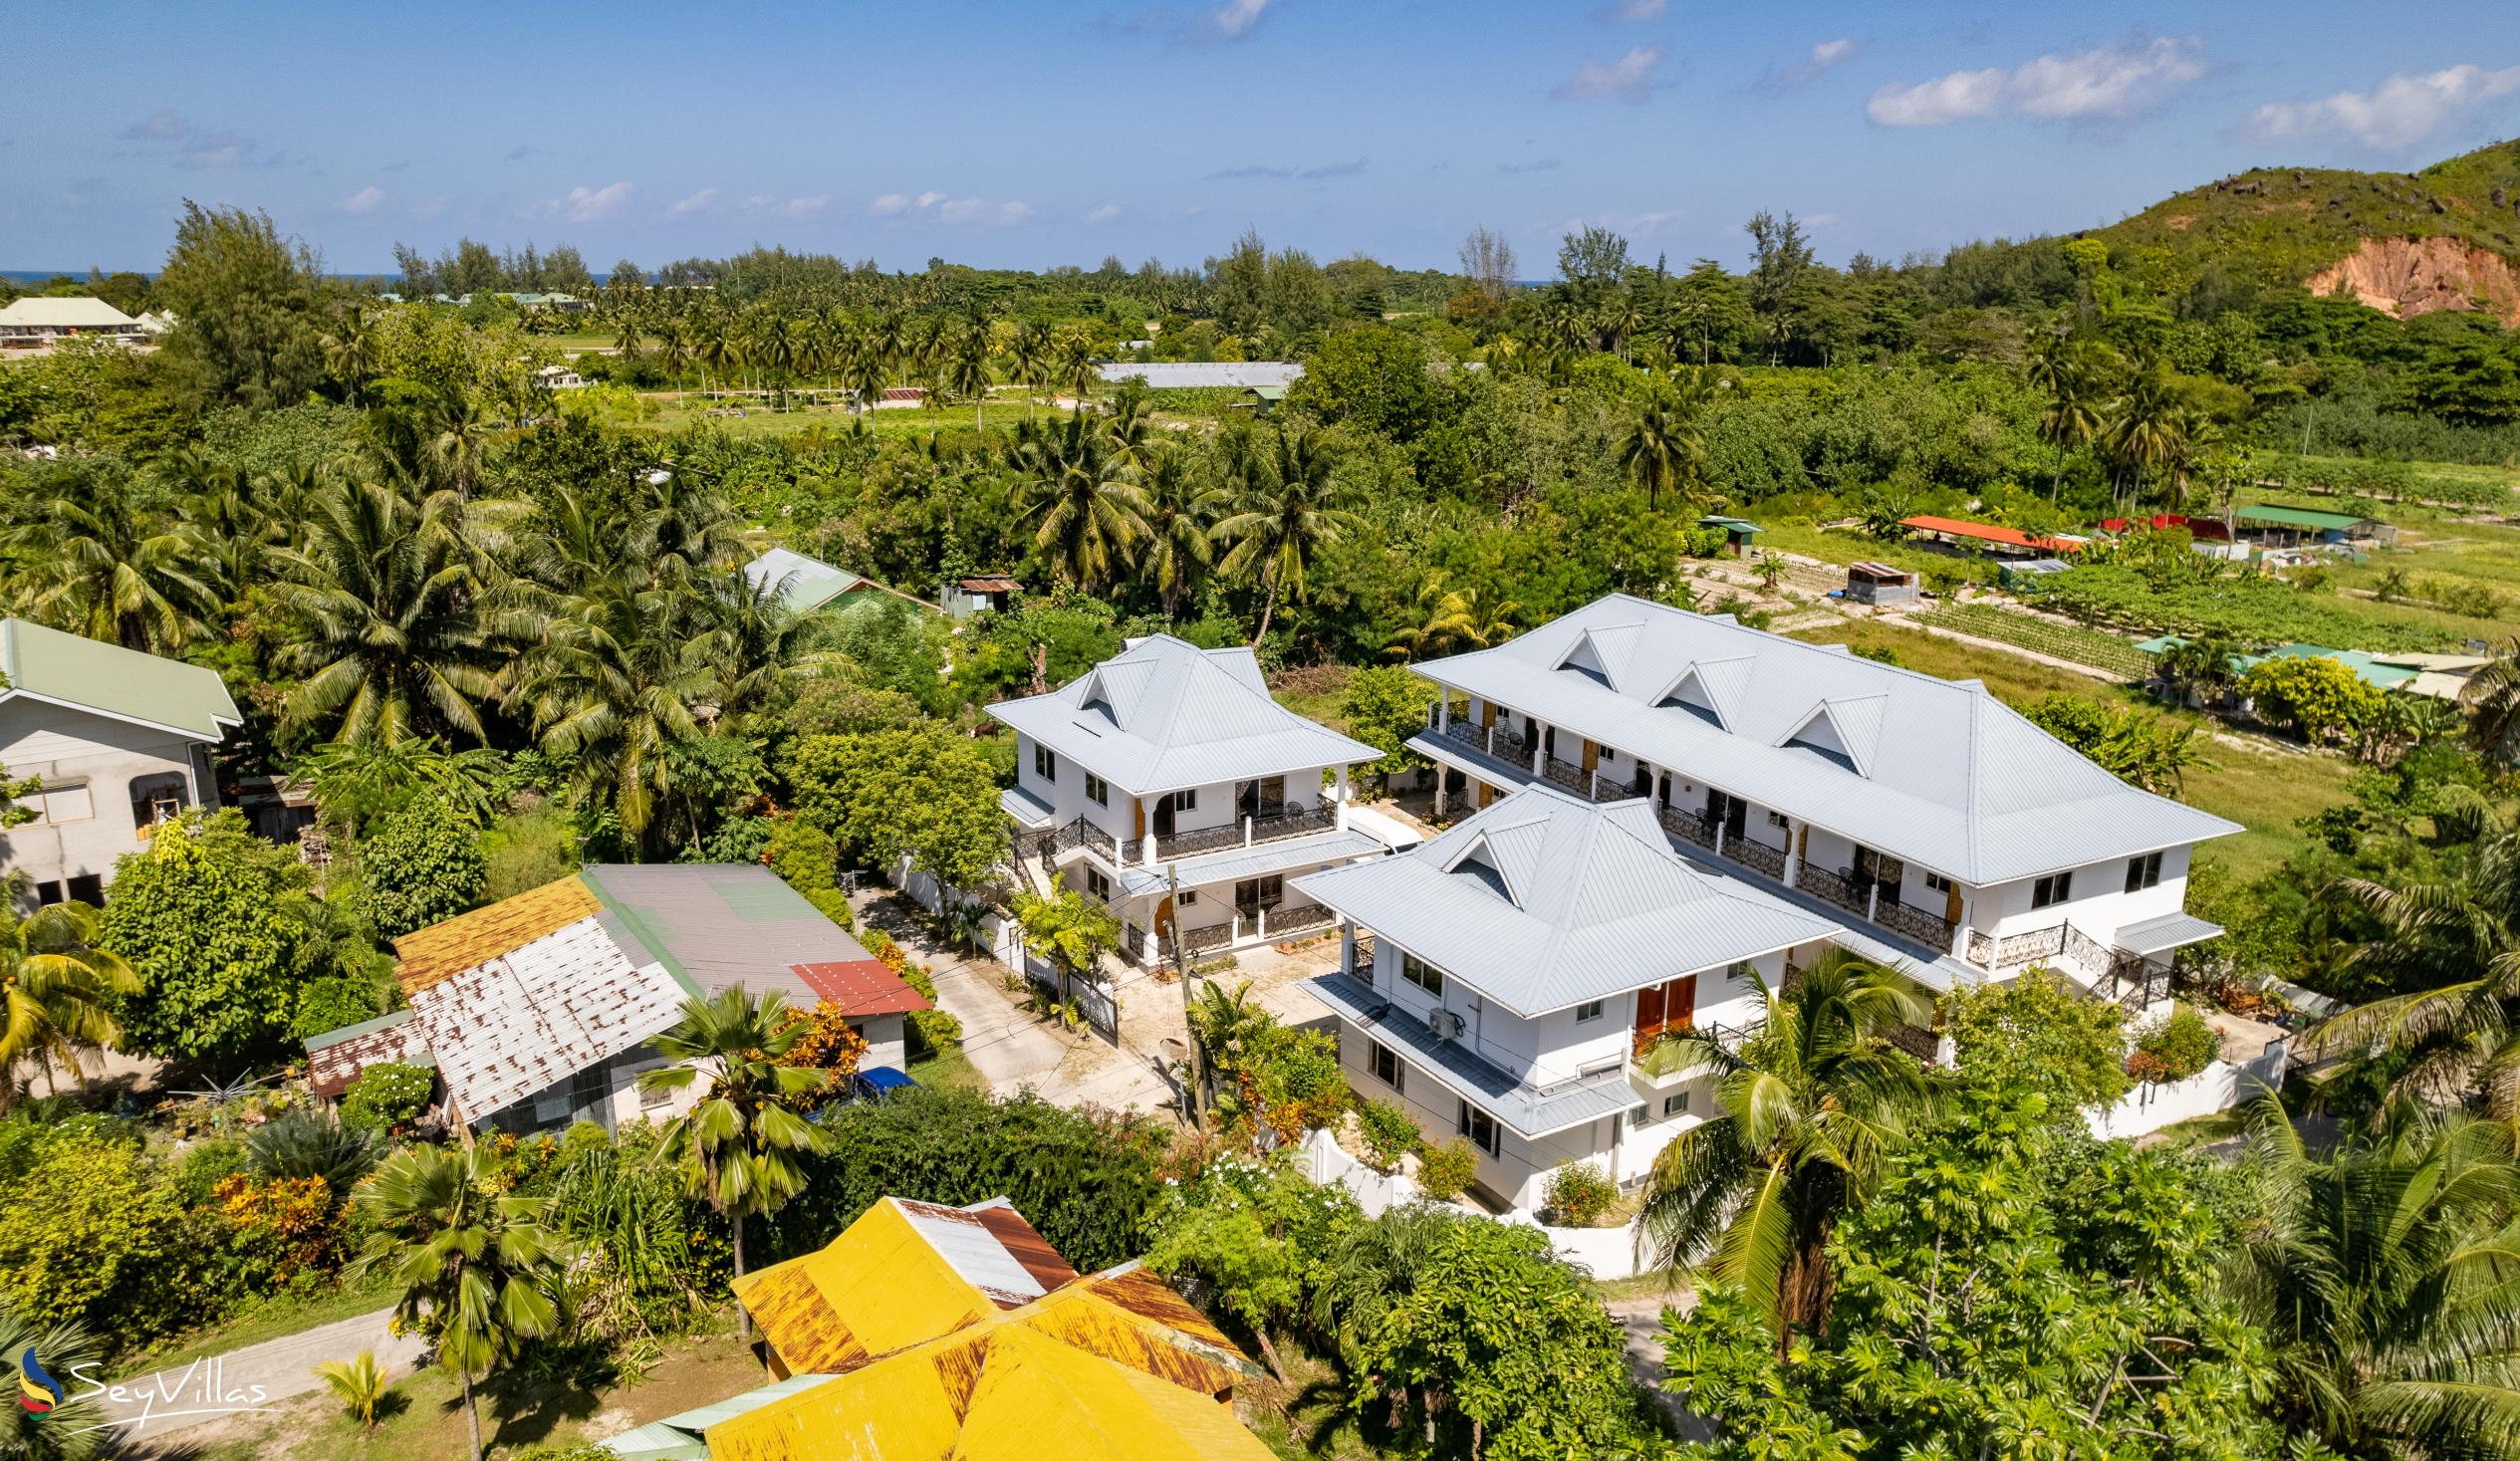 Foto 17: Casadani Luxury Guest House - Aussenbereich - Praslin (Seychellen)